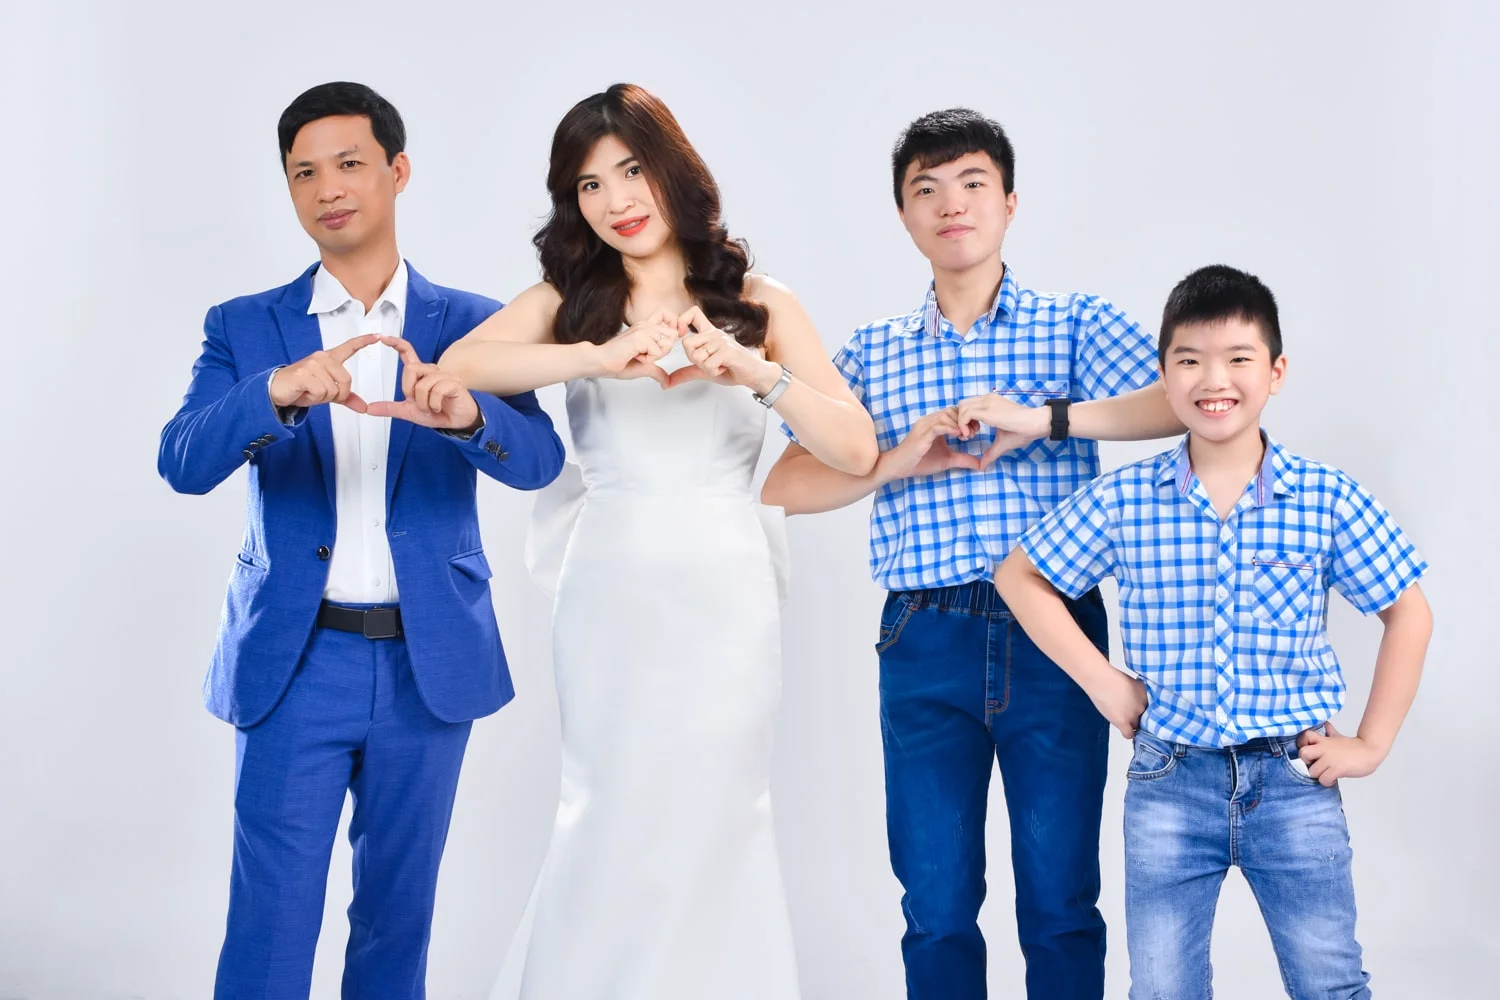 Anh gia dinh 4 nguoi 9 min - Chụp ảnh kỷ niệm 15 năm ngày cưới gia đình chị Tho- HThao Studio